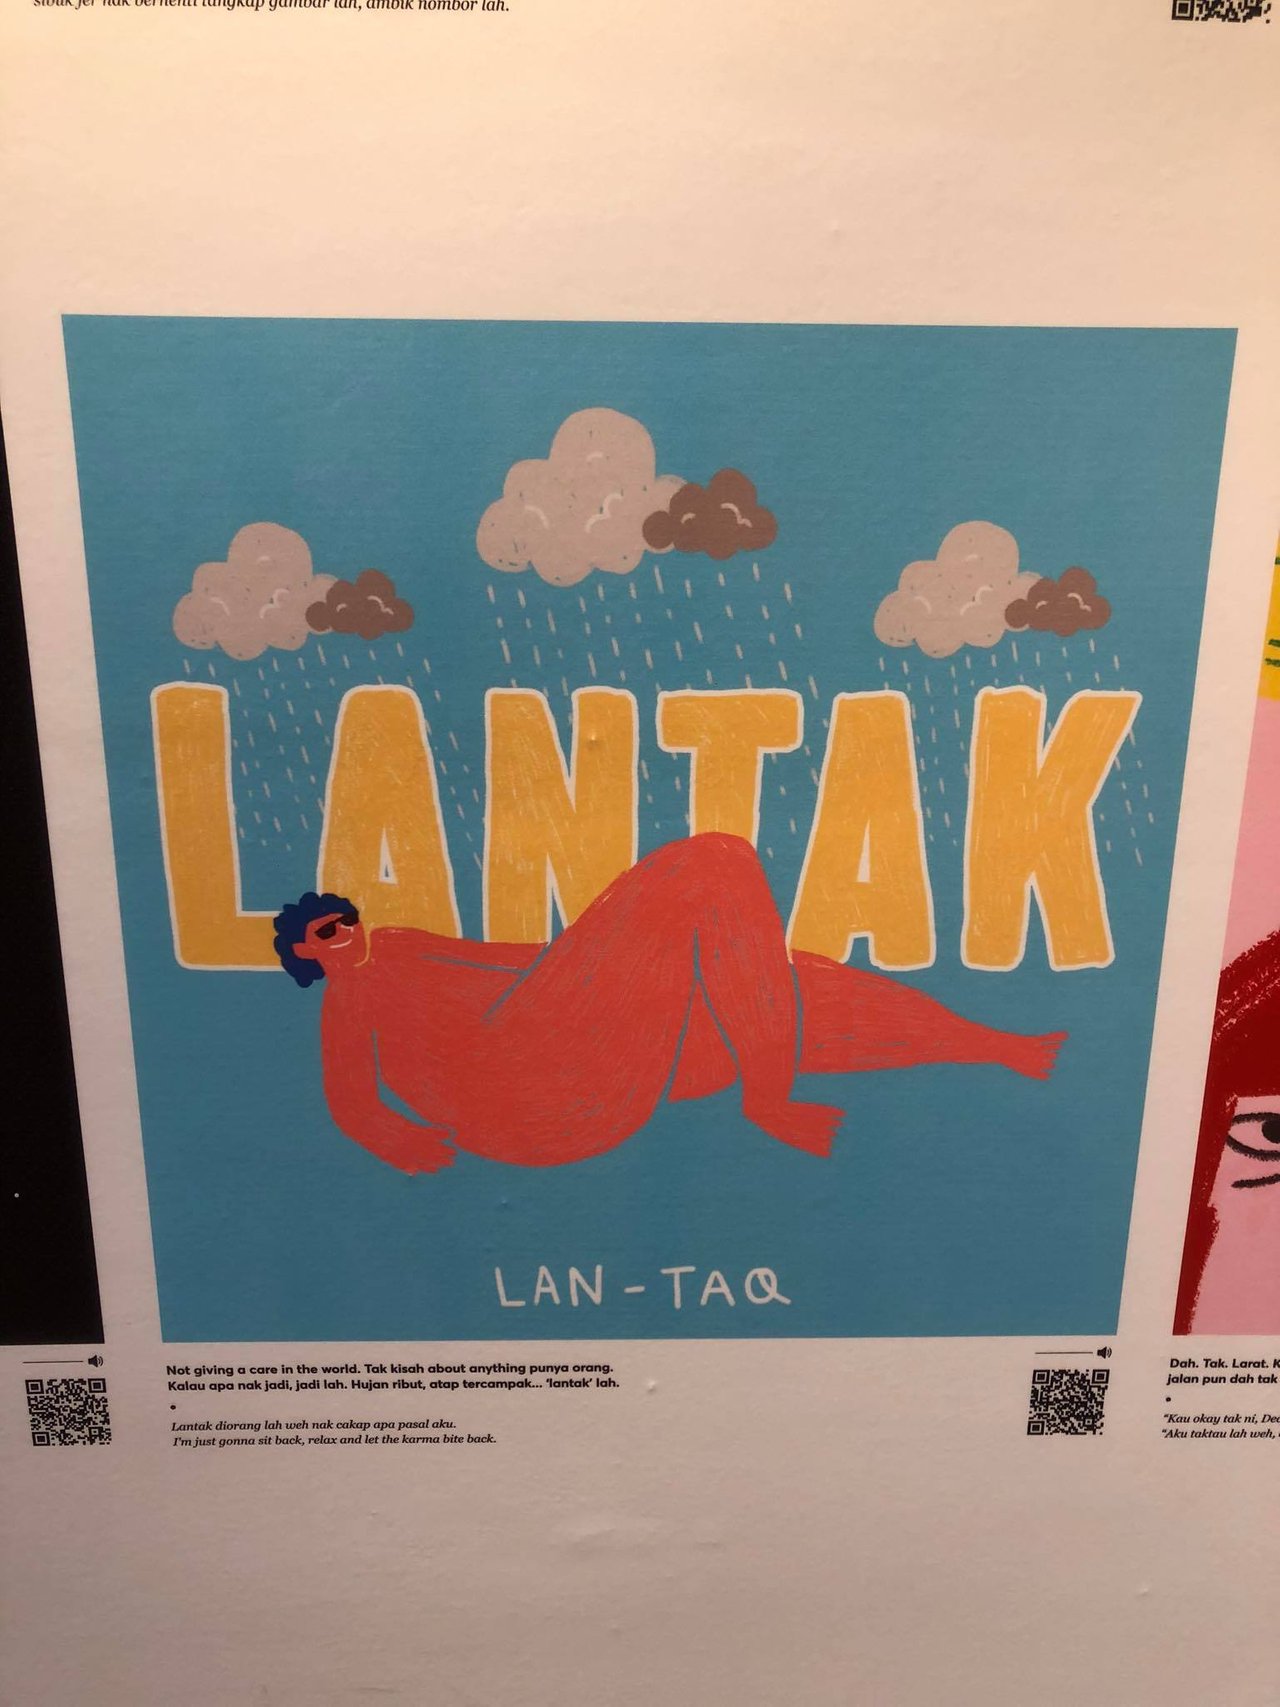 Lantak meaning